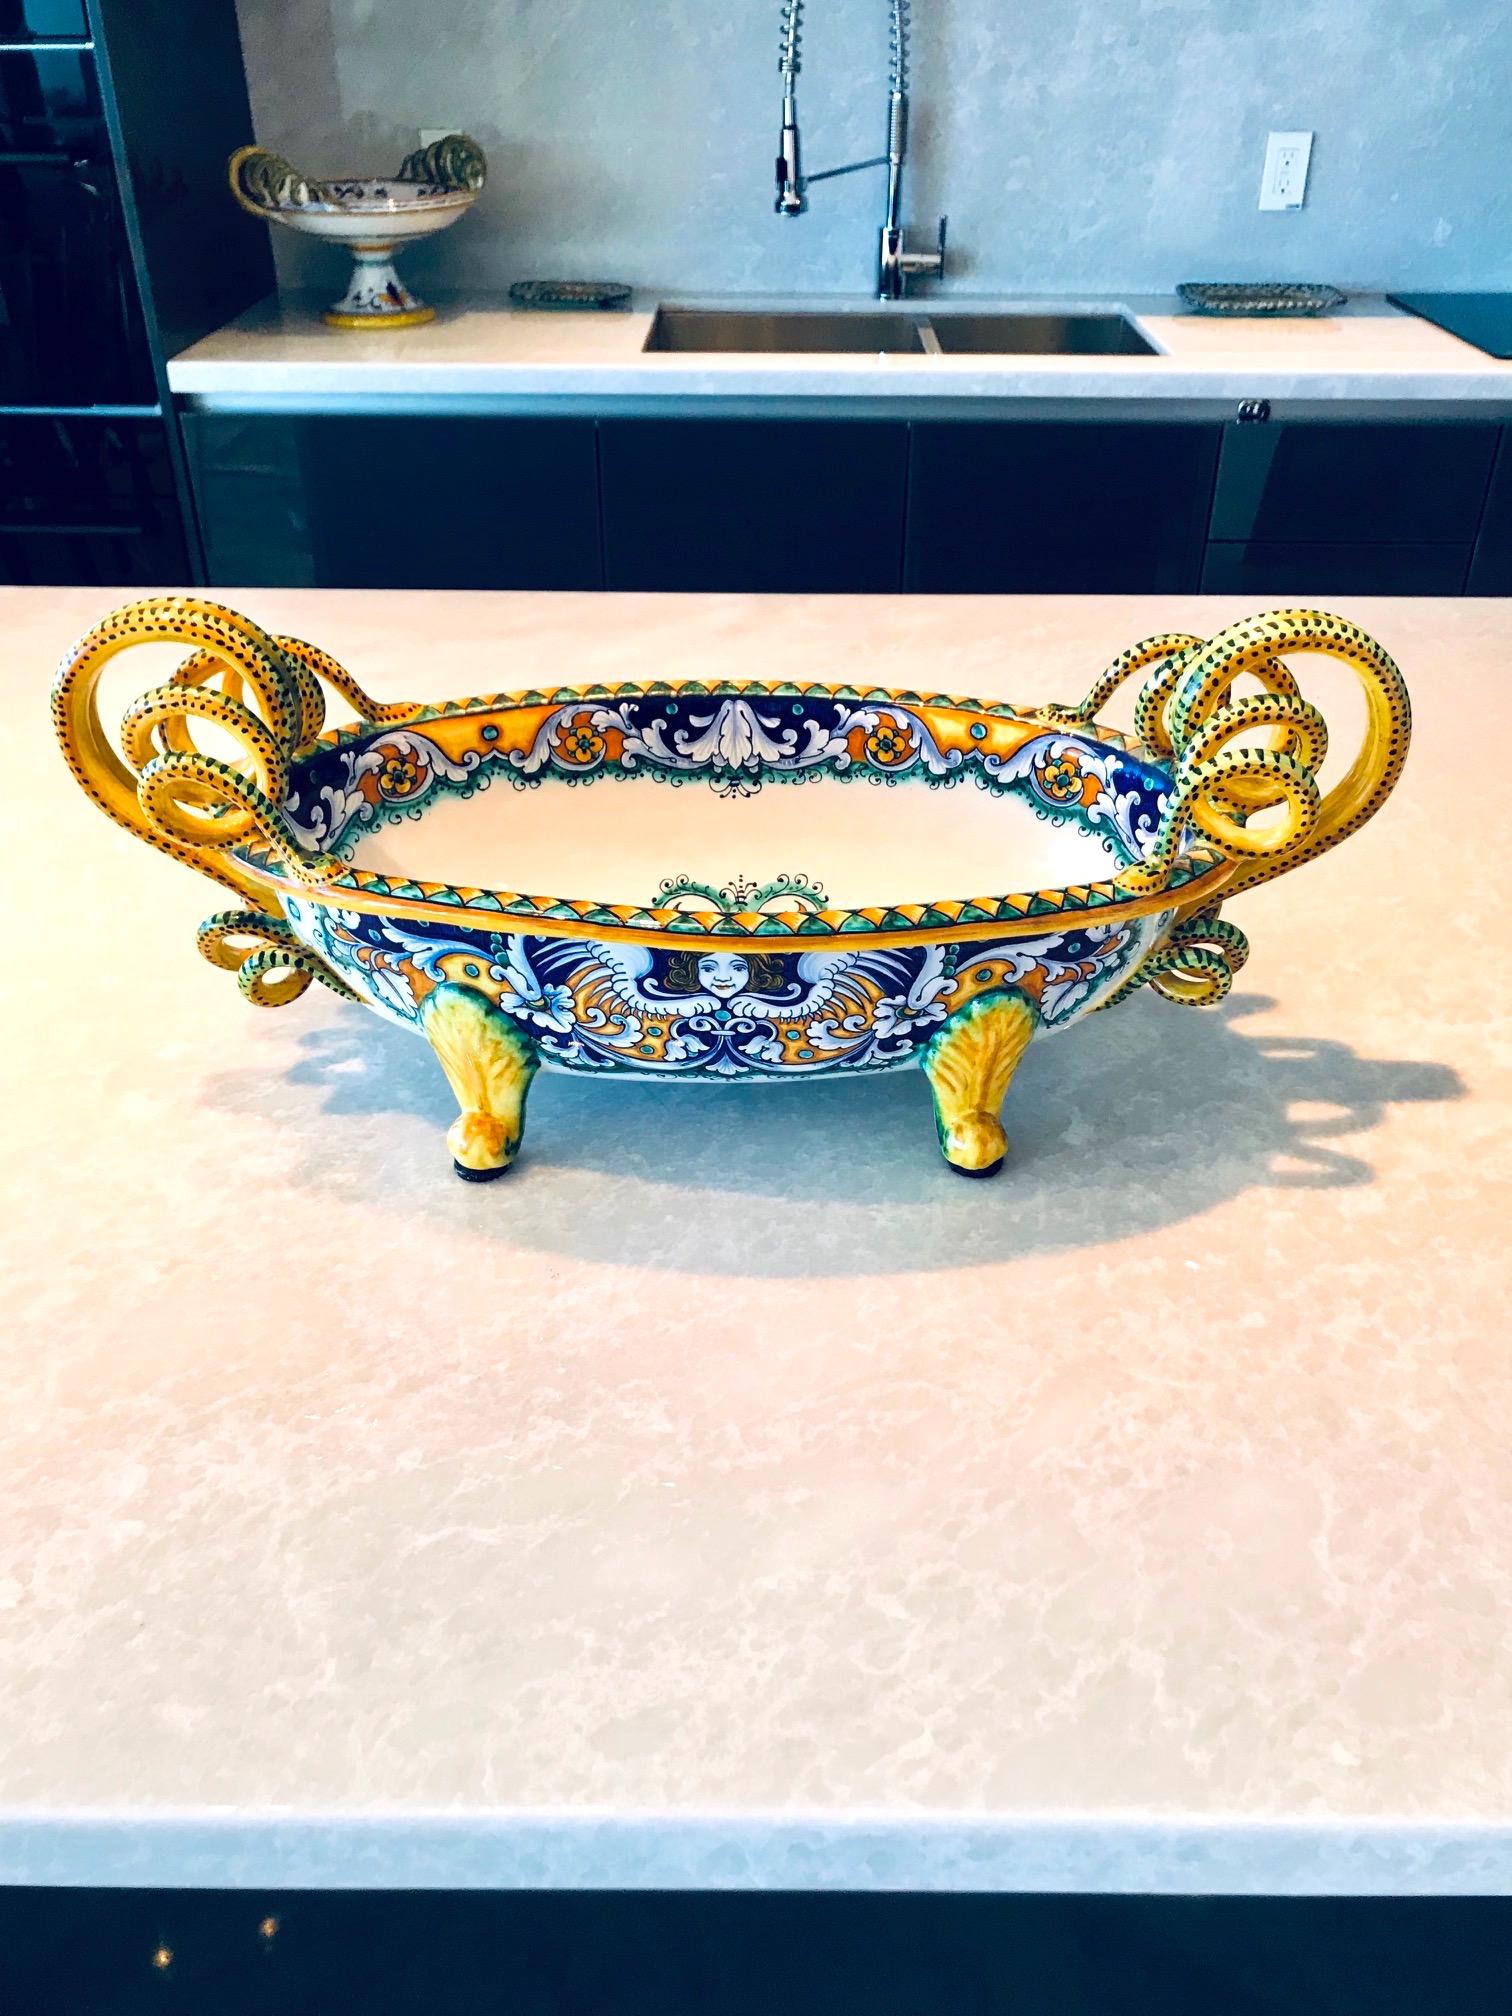 Exquisite Majolika-Schale mit handgemalter Zinnglasur auf Steingut-Keramik. Handgefertigt mit stilisierten:: schlangenförmigen Griffen und aufwendig bemalten Mustern. Die Schale hat eine ovale Form mit einem Sockel. In leuchtenden Gelb-:: Blau- und